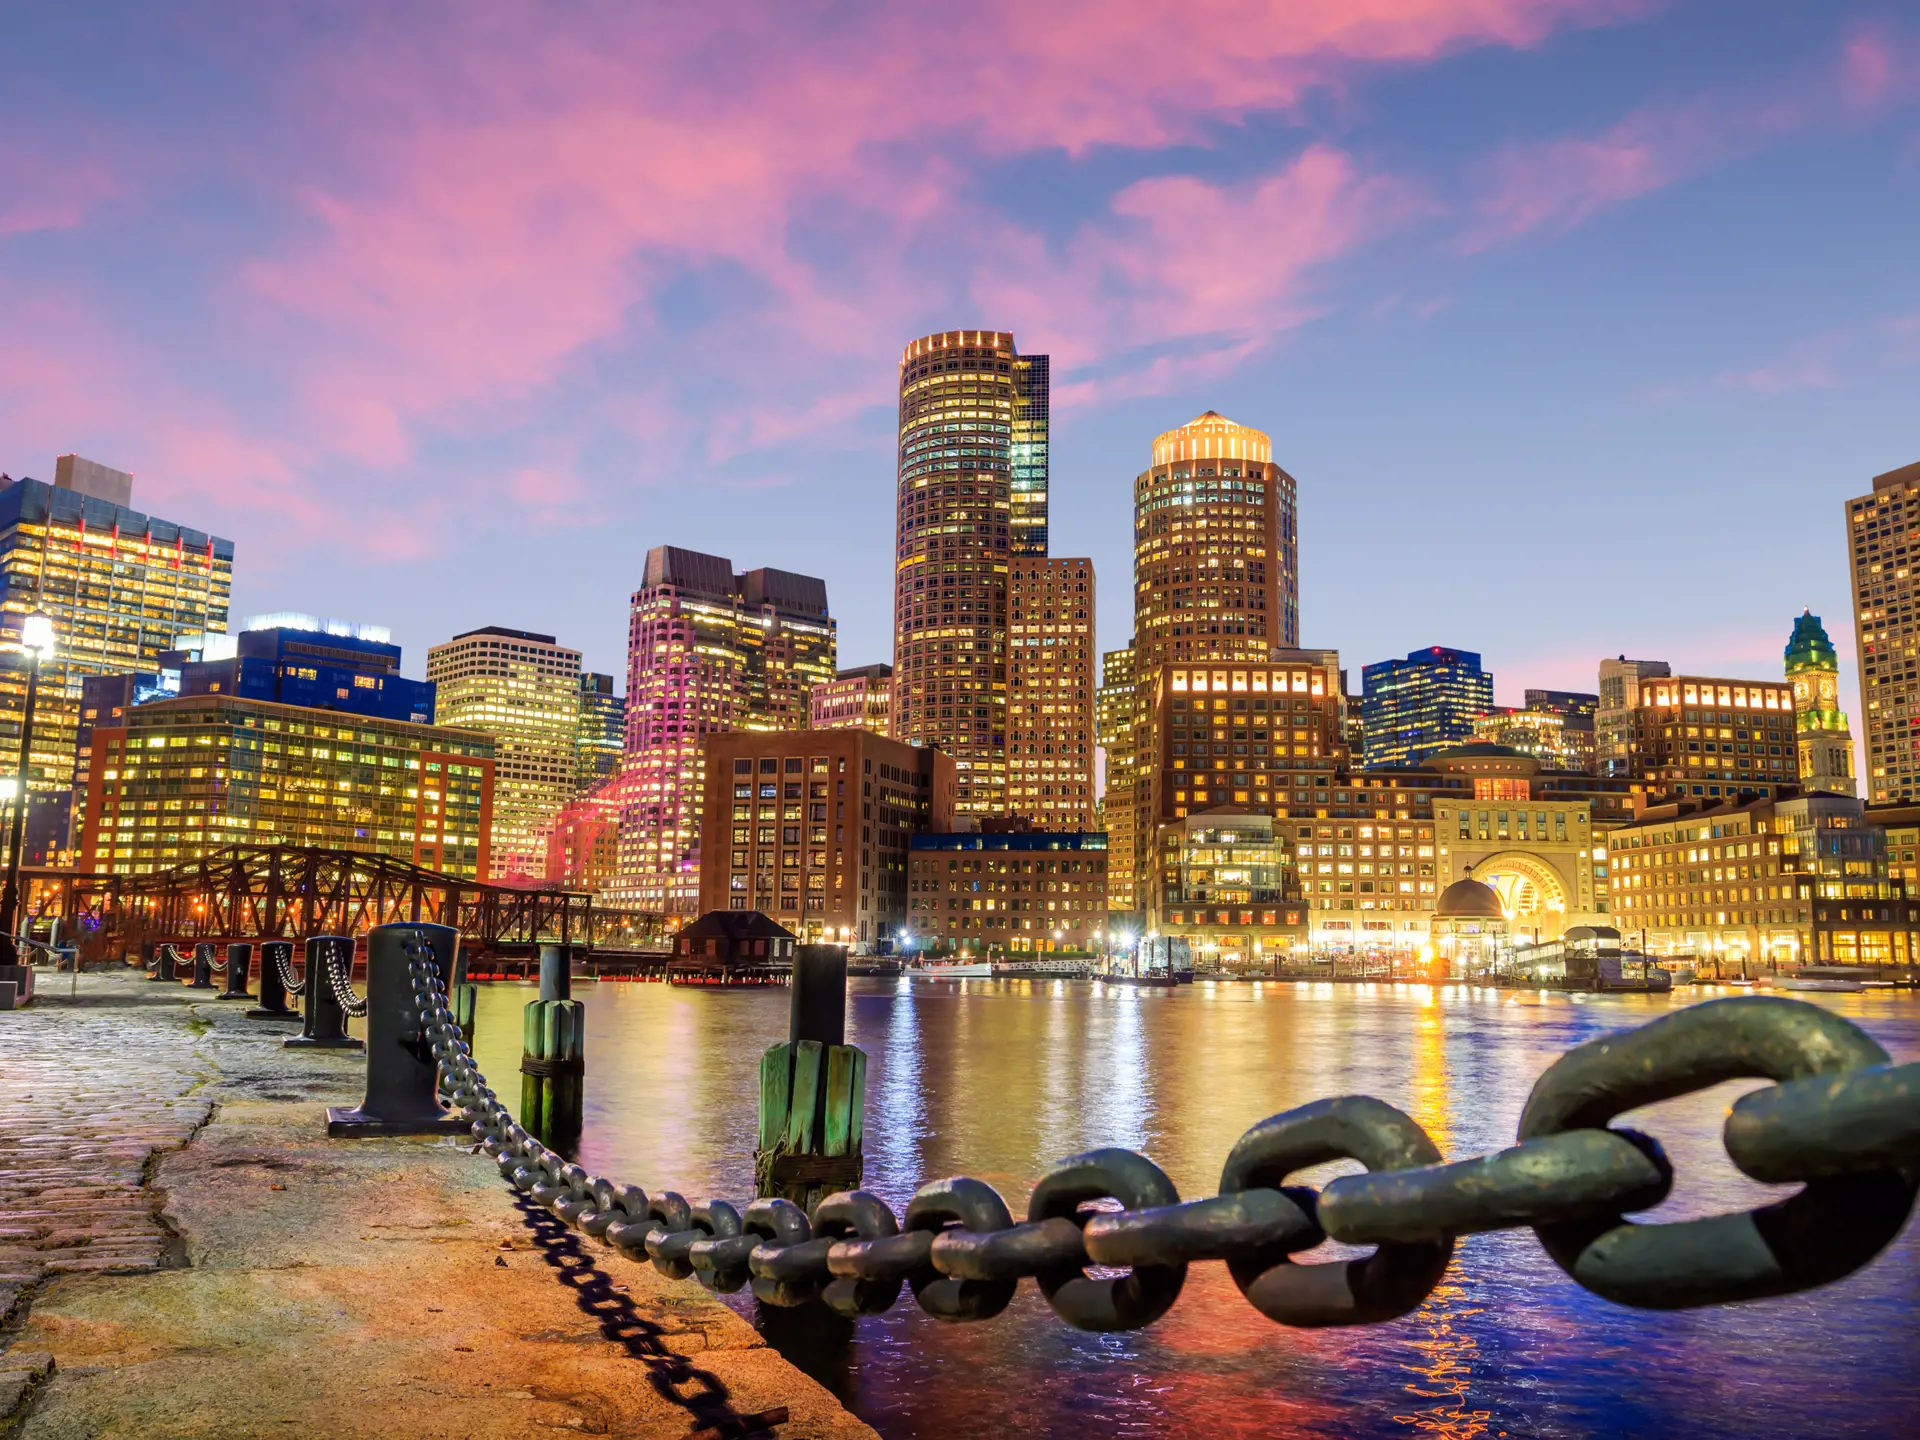 BOSTON - downtown Boston har et stort udvalg af spændende restauranter og velassorterede indkøbscentre, Check Point Travel